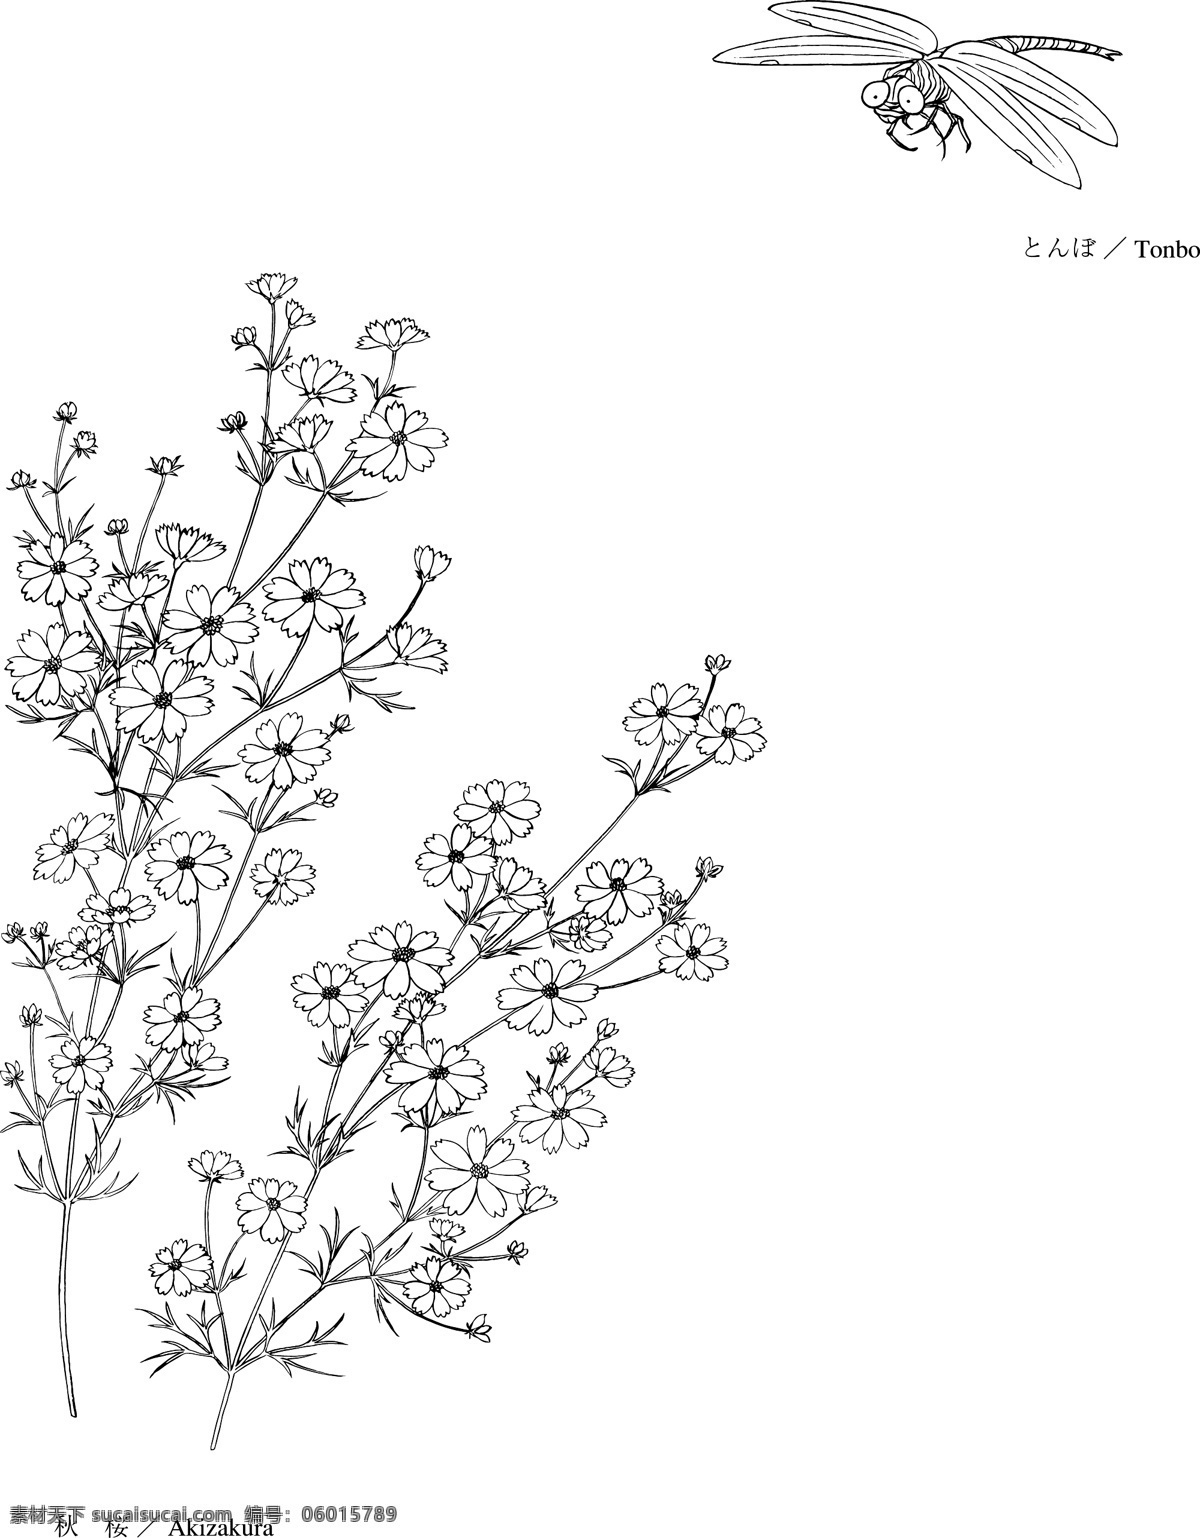 日本矢量花草 矢量eps 08akizakura 花朵 花草 花纹 日本矢量素材 设计素材 花草世界 矢量植物 矢量图库 白色